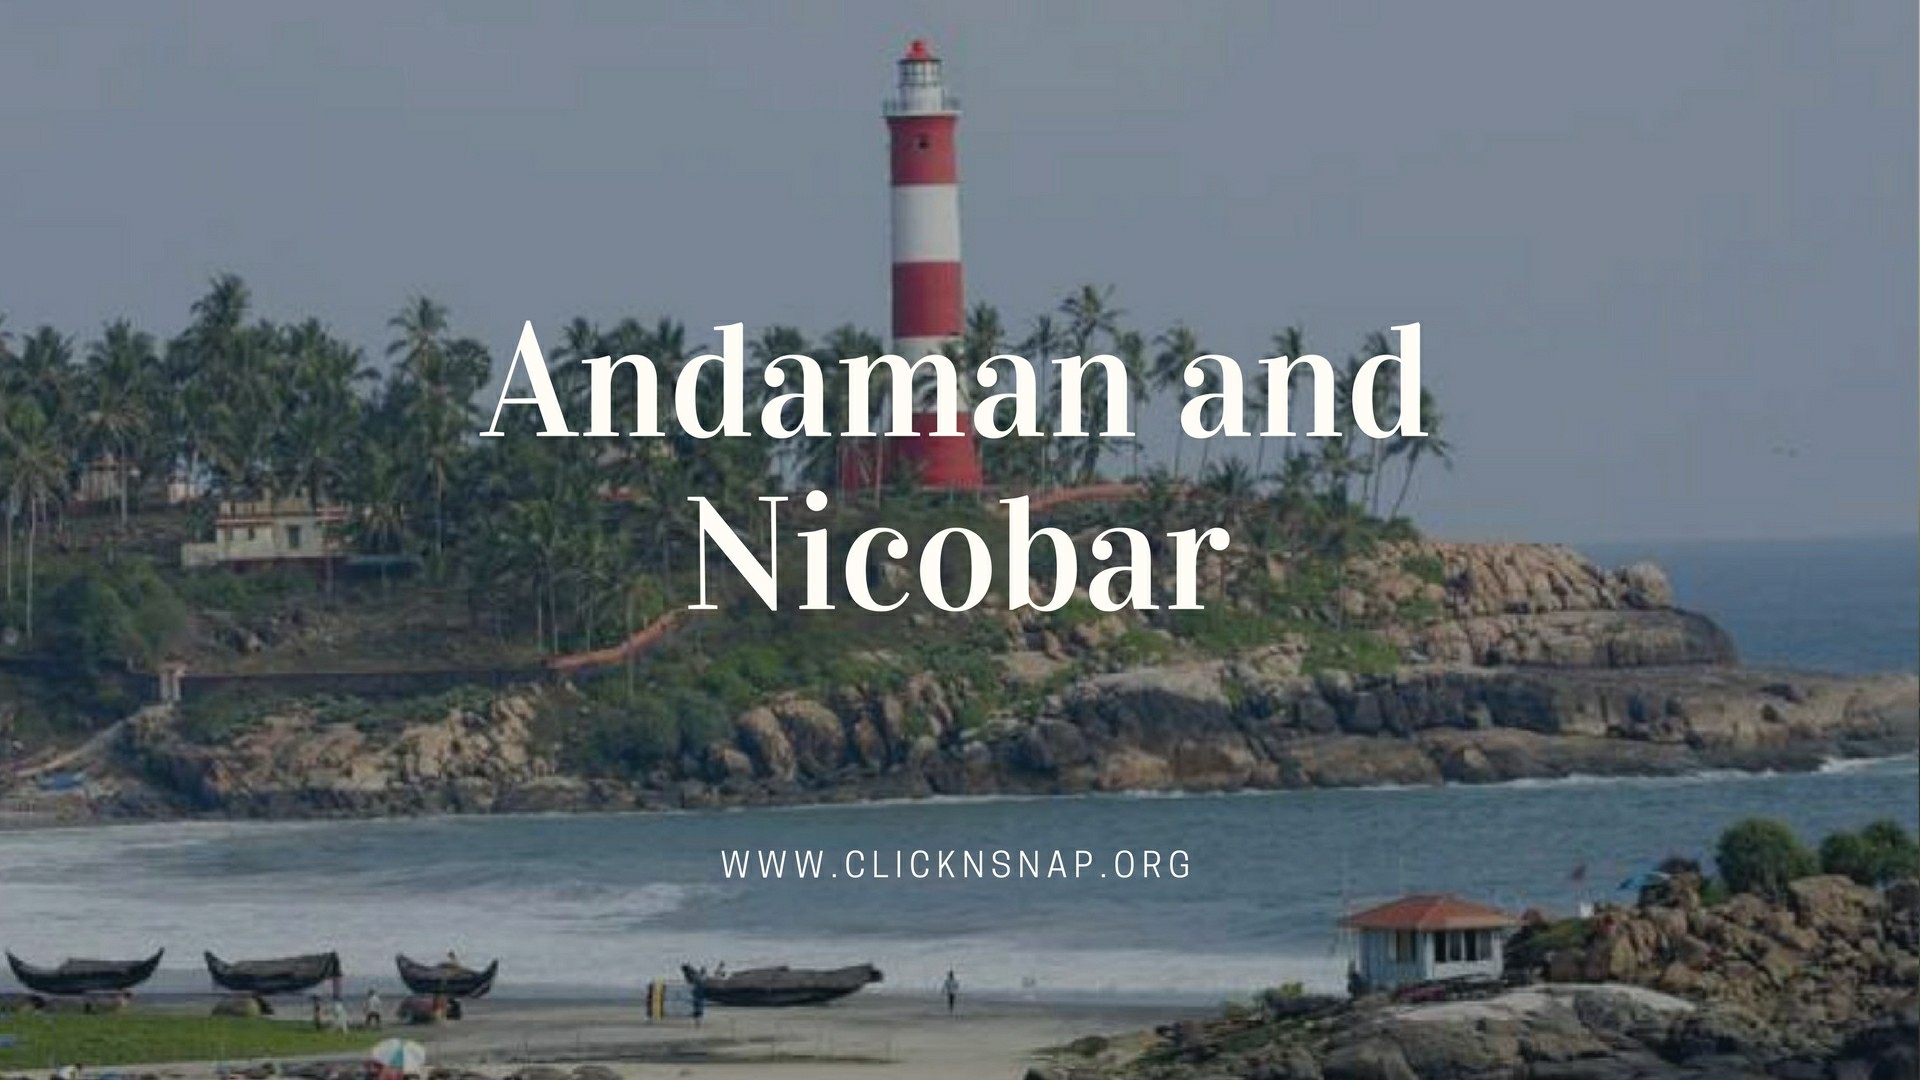 Andaman and Nicobar, Summer Holiday, India